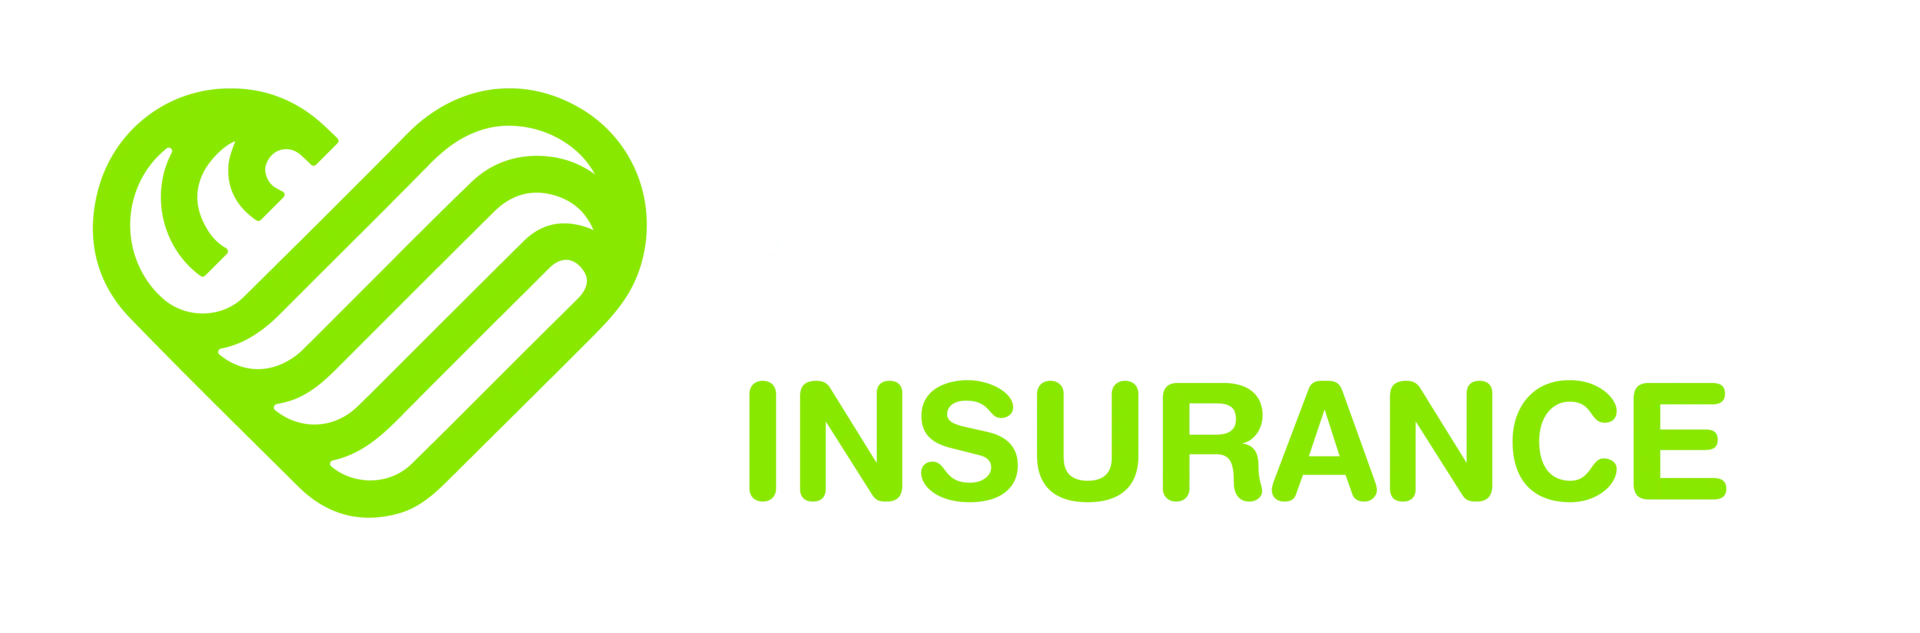 Amor Insurance agencia de seguros médicos y seguros de vida, radicada en la ciudad de Miami Florida. Brindamos servicios en mas de 45  estados.